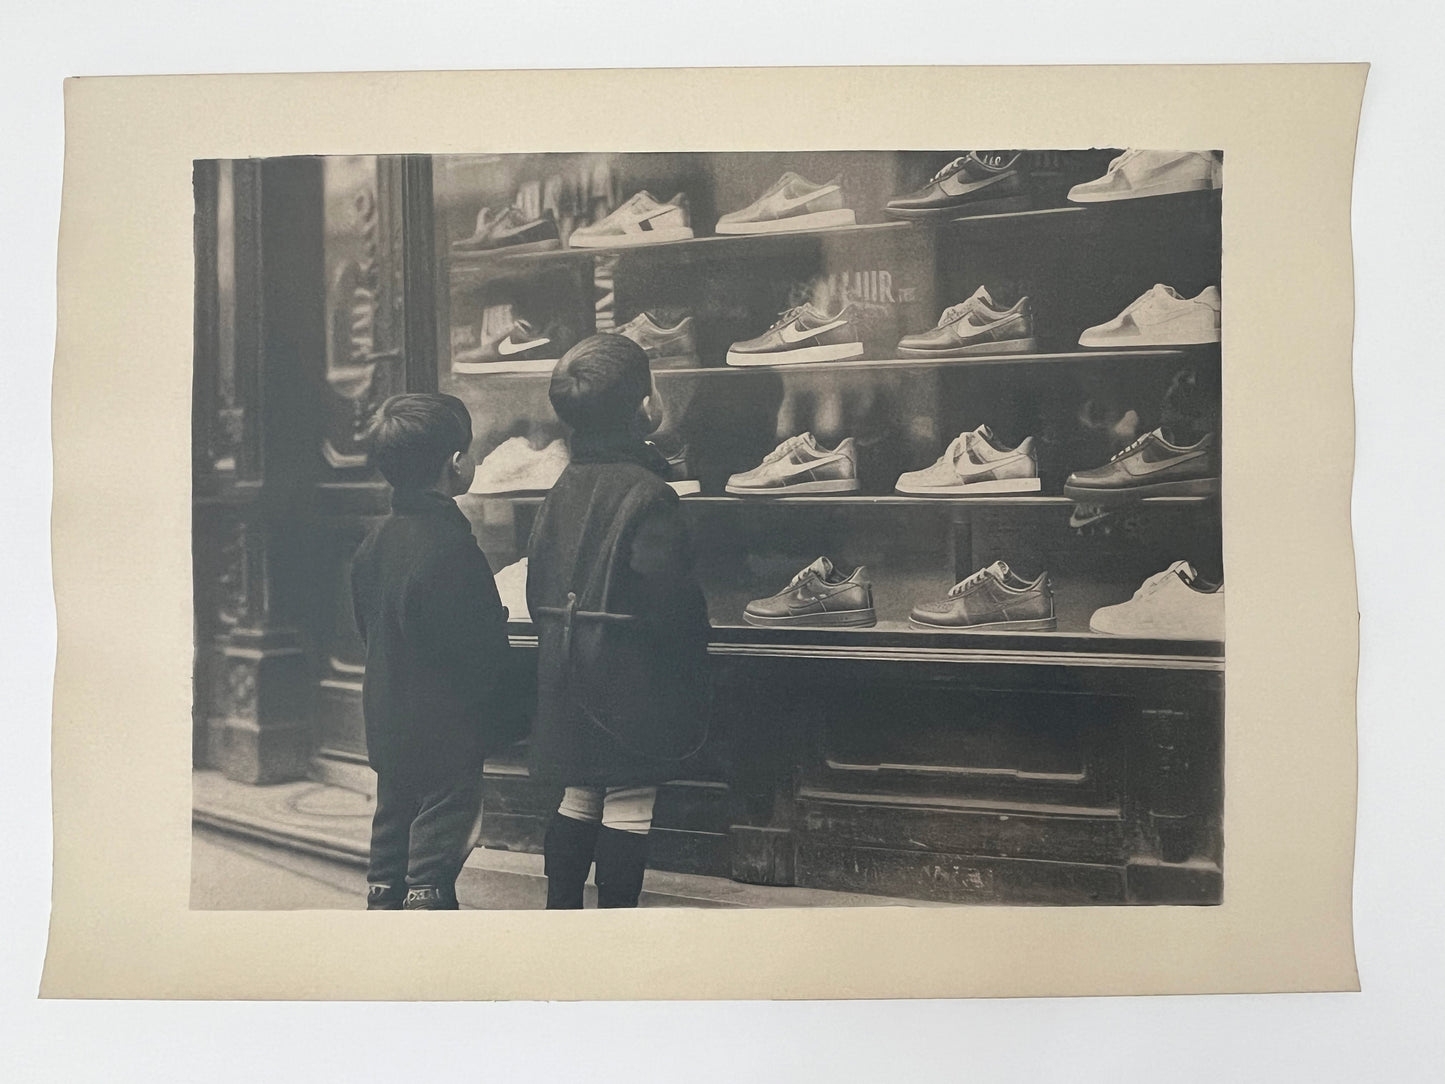 The shoe store, Paris 1920